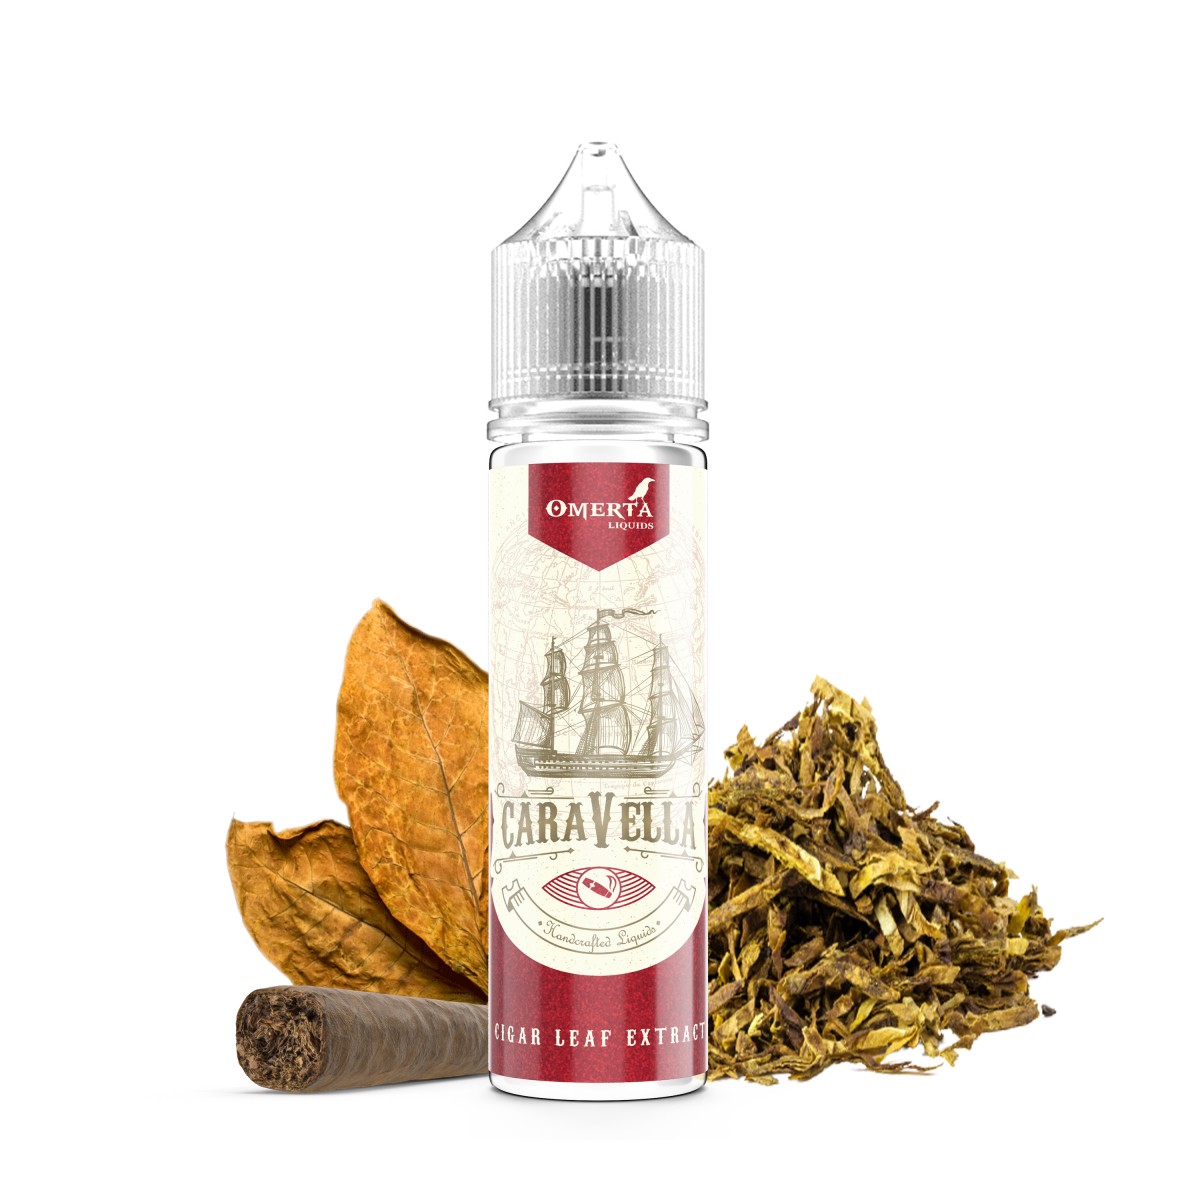 Caravella Cigar Leaf Extract 20ml Flavor WBF 1200x1200 1 - Caravella Cigar Leaf Extract 60